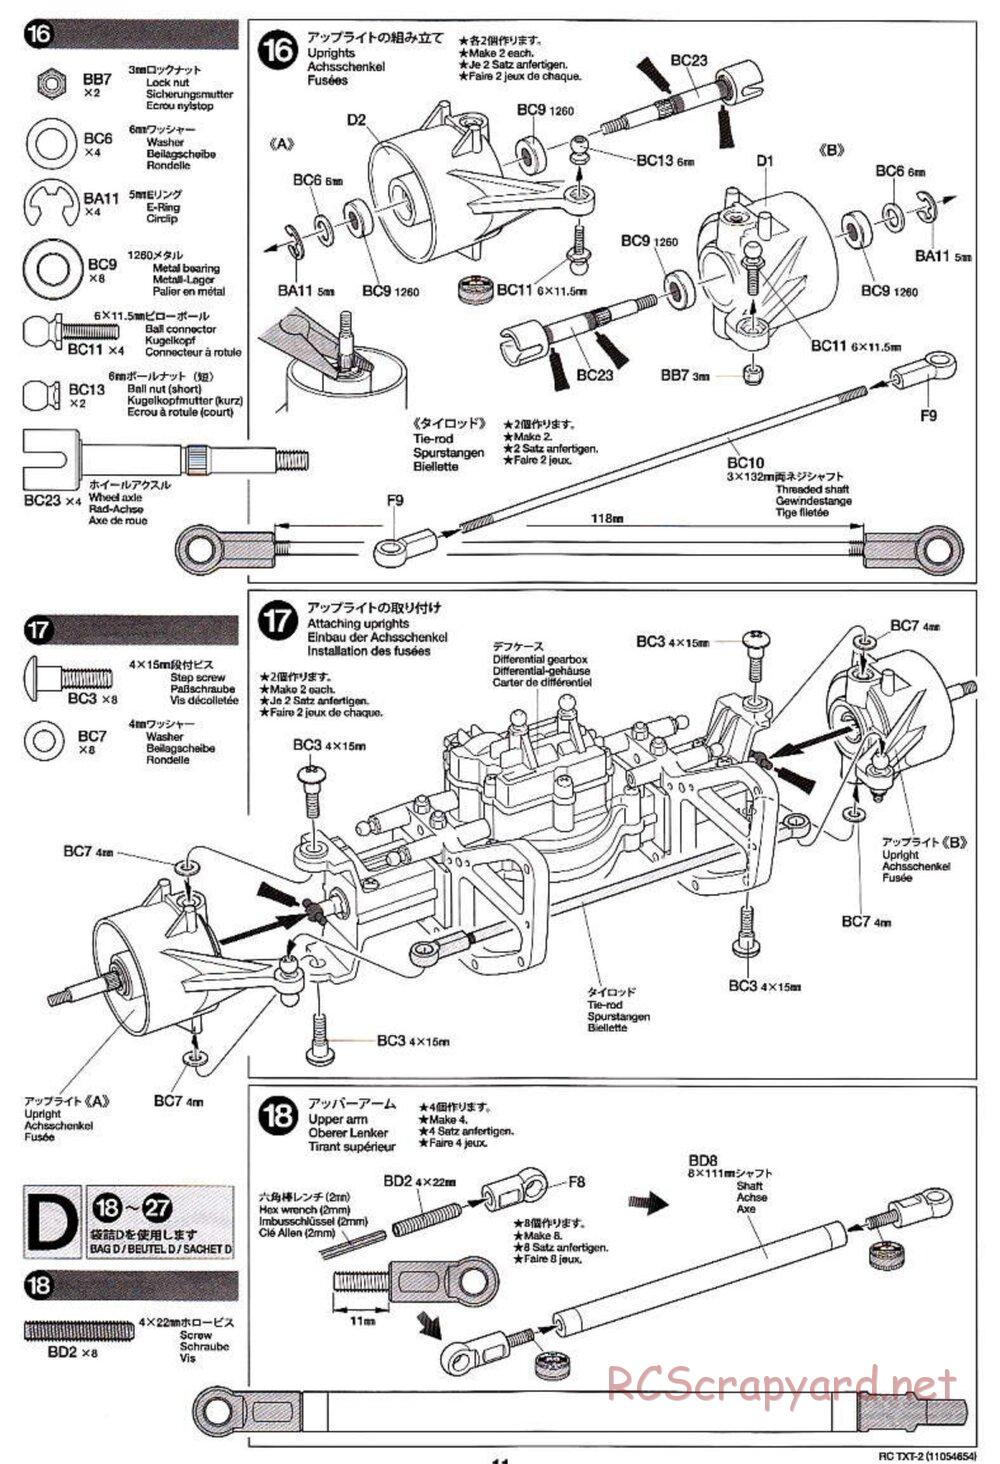 Tamiya - TXT-2 Chassis - Manual - Page 11